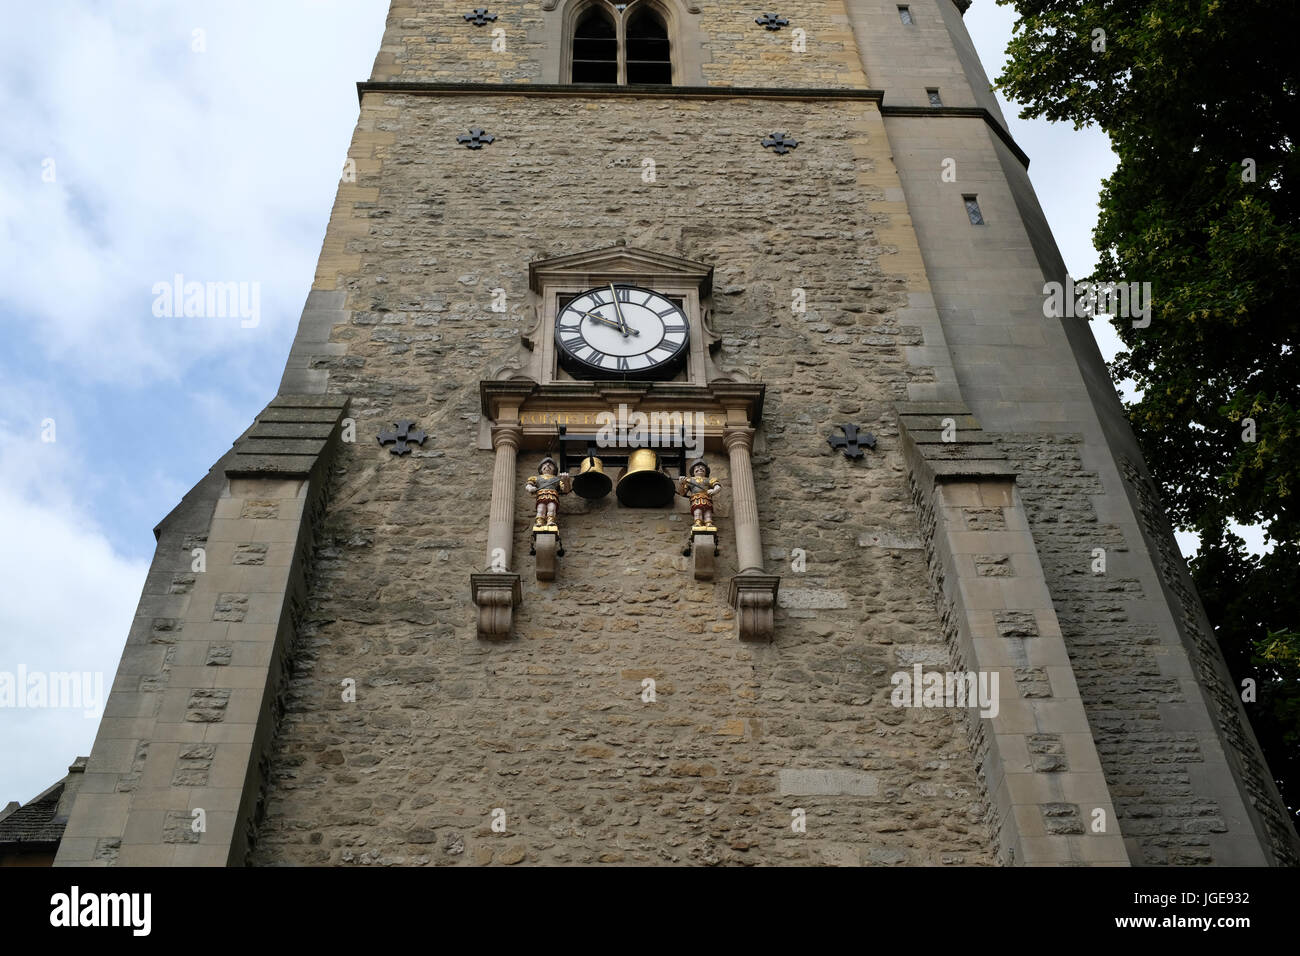 St.-Martins Turm - Carfax - Oxford Uhrturm Stockfoto